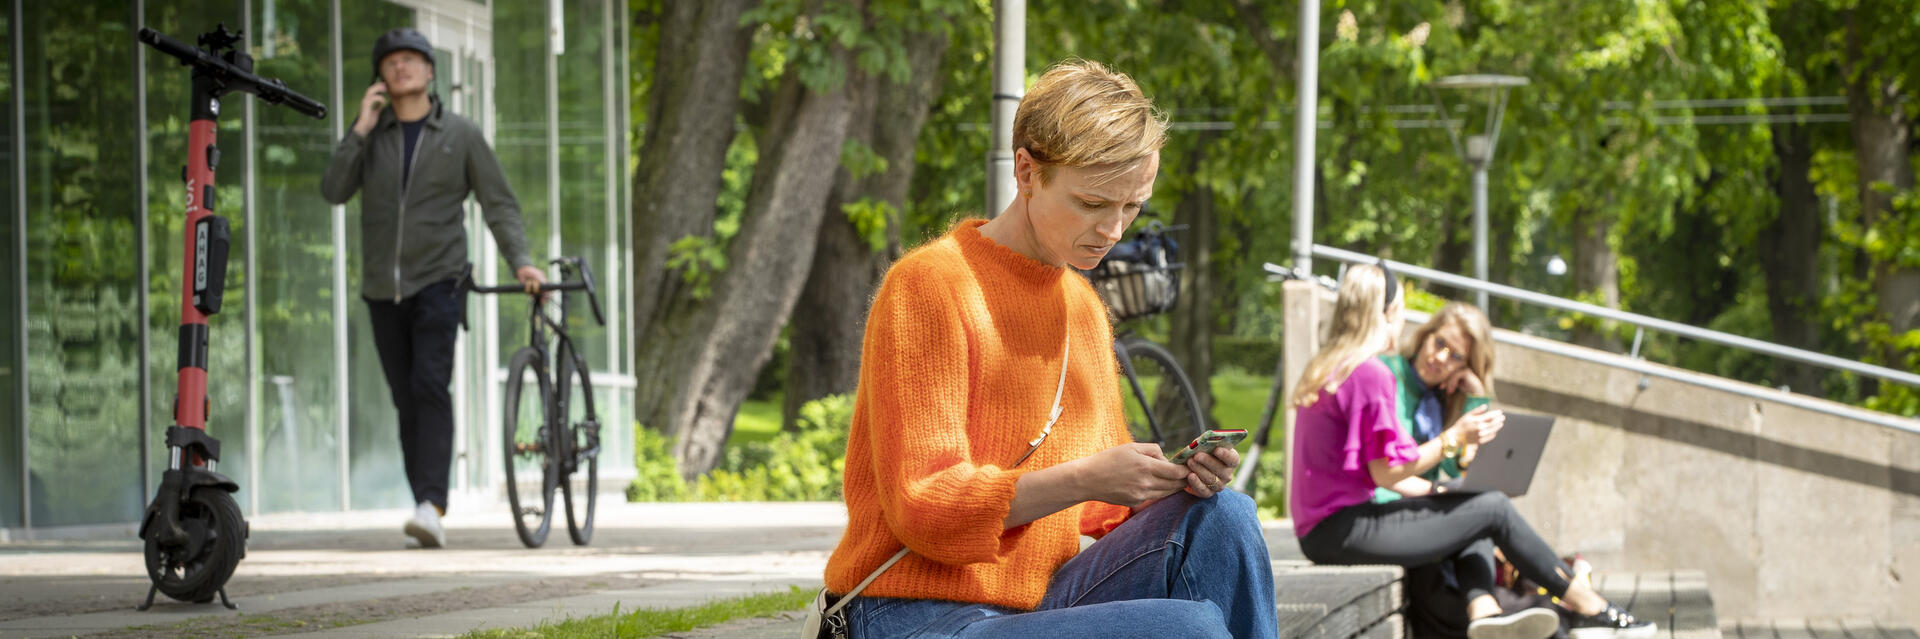 Kvinna sitter på en bänk och tittar ner i sin mobil